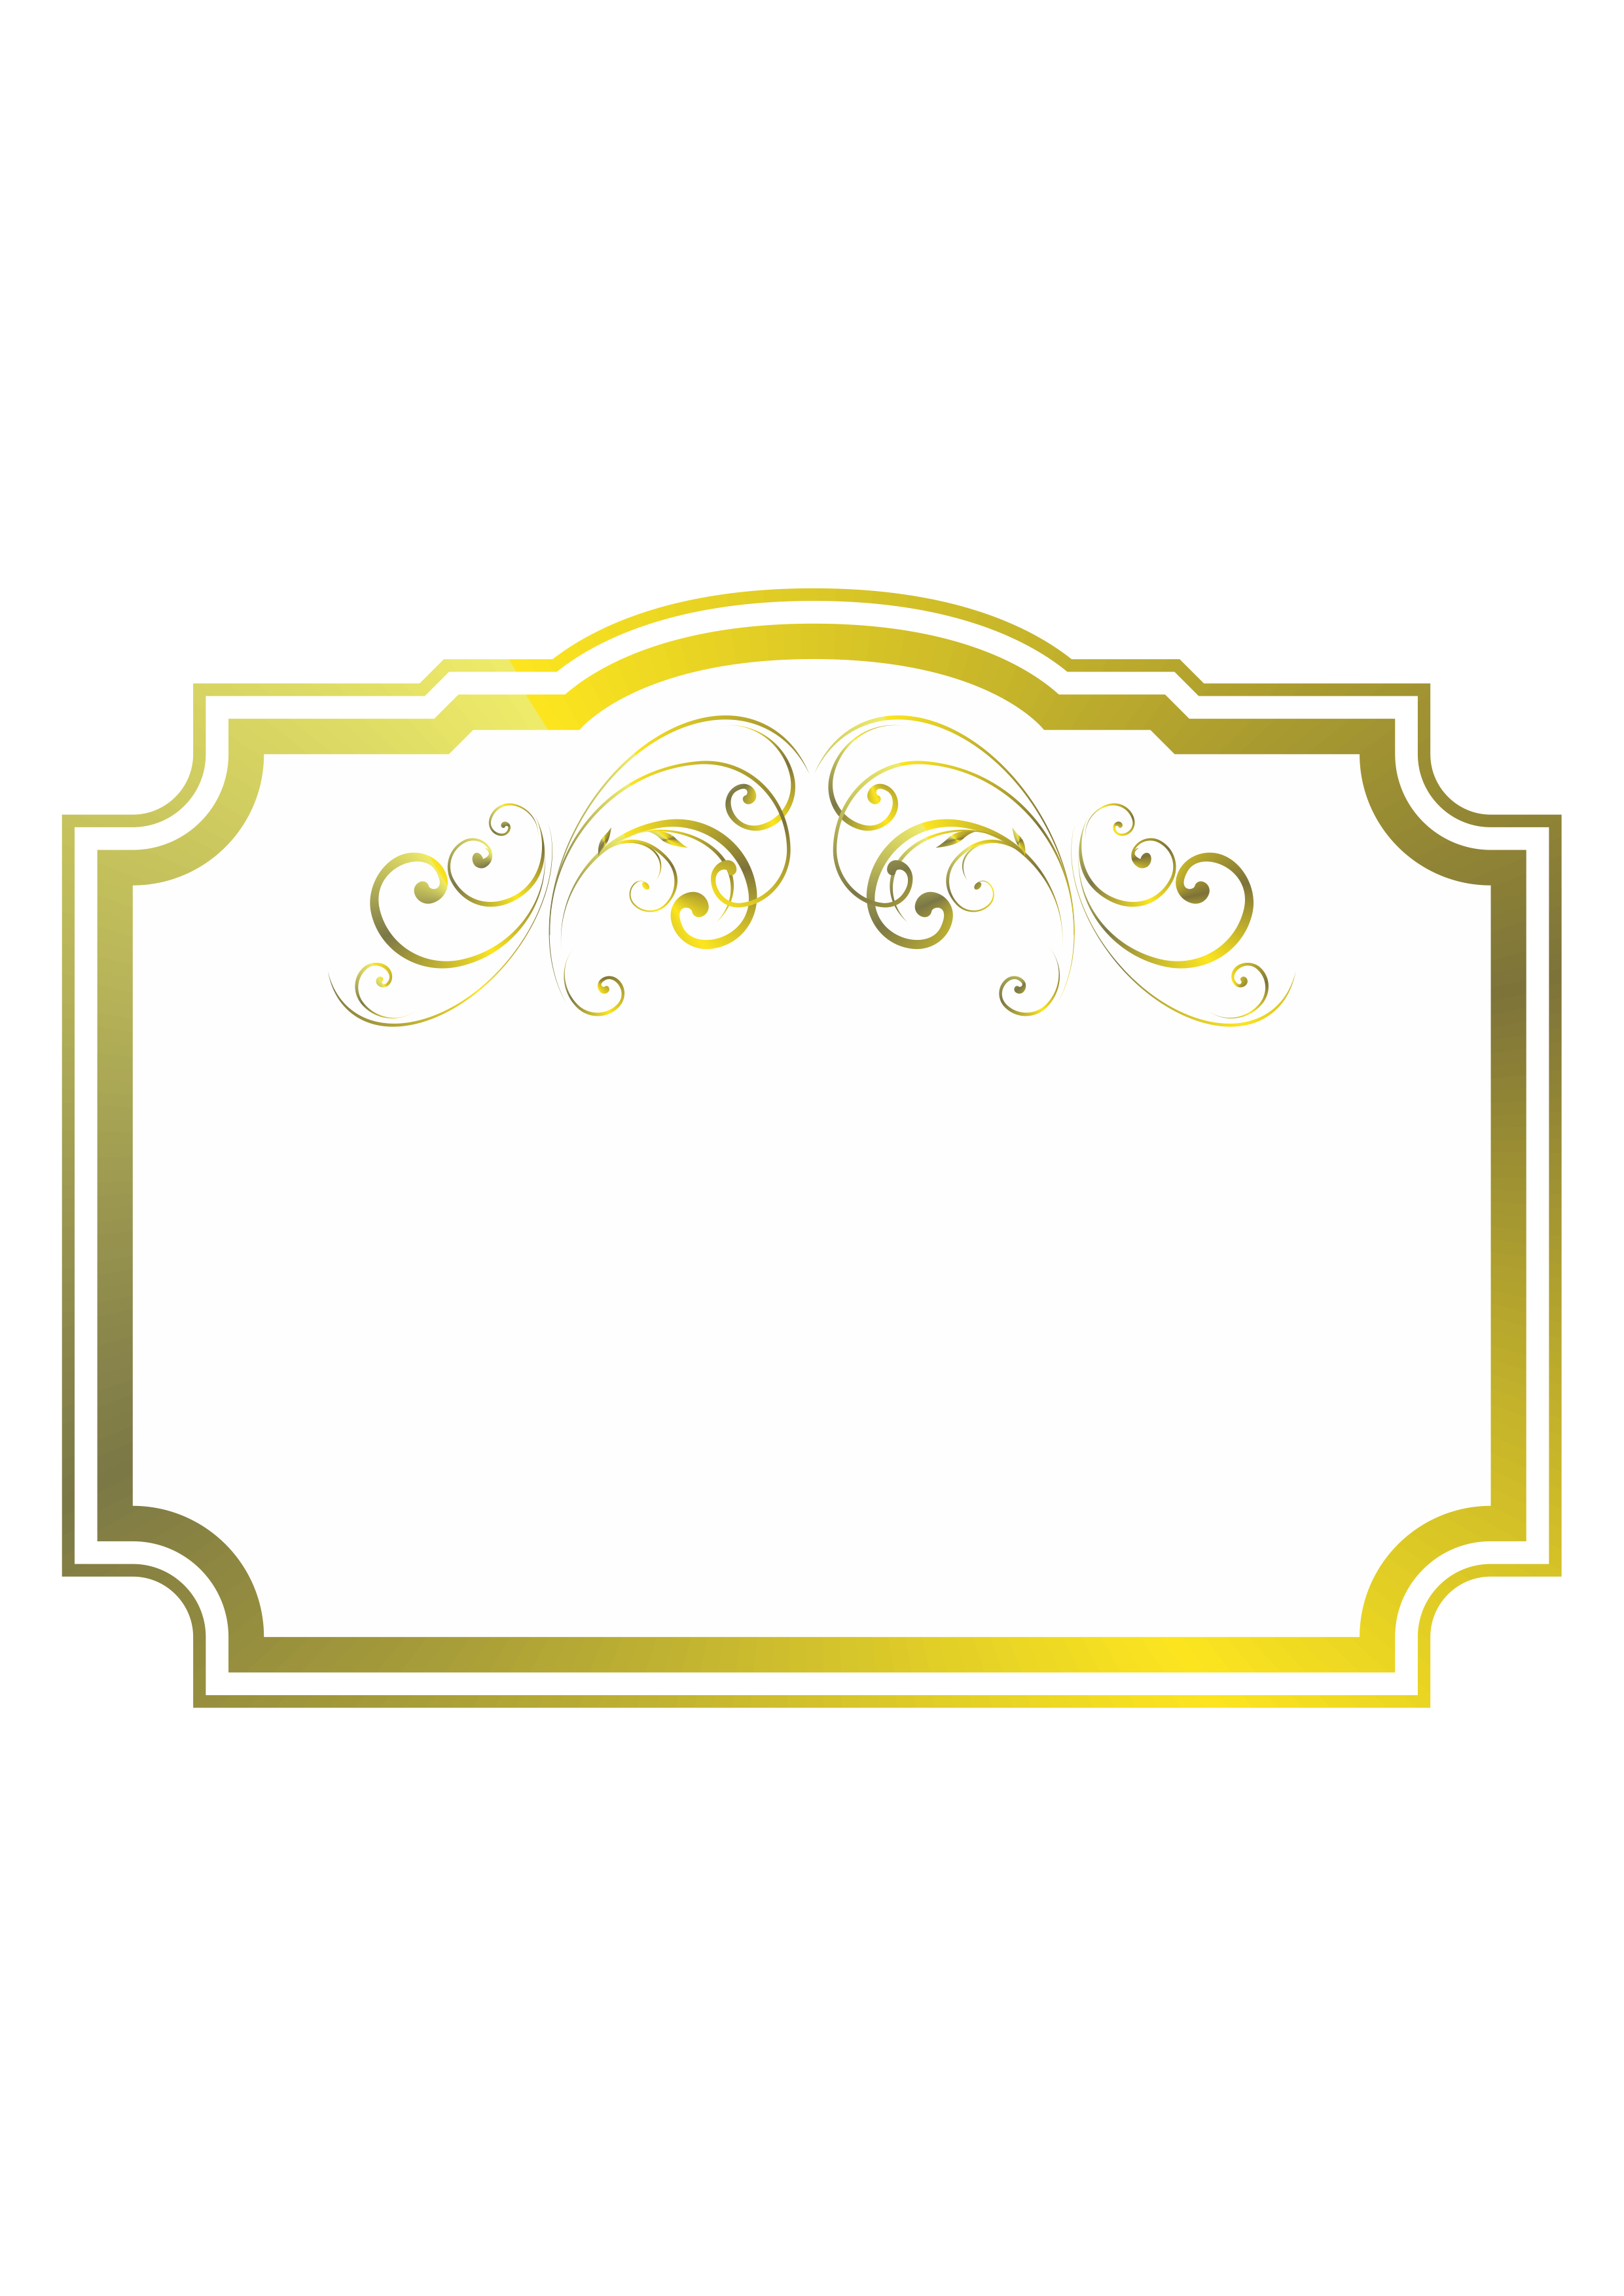 Plaquinha dourada para decoração e artes digitais png